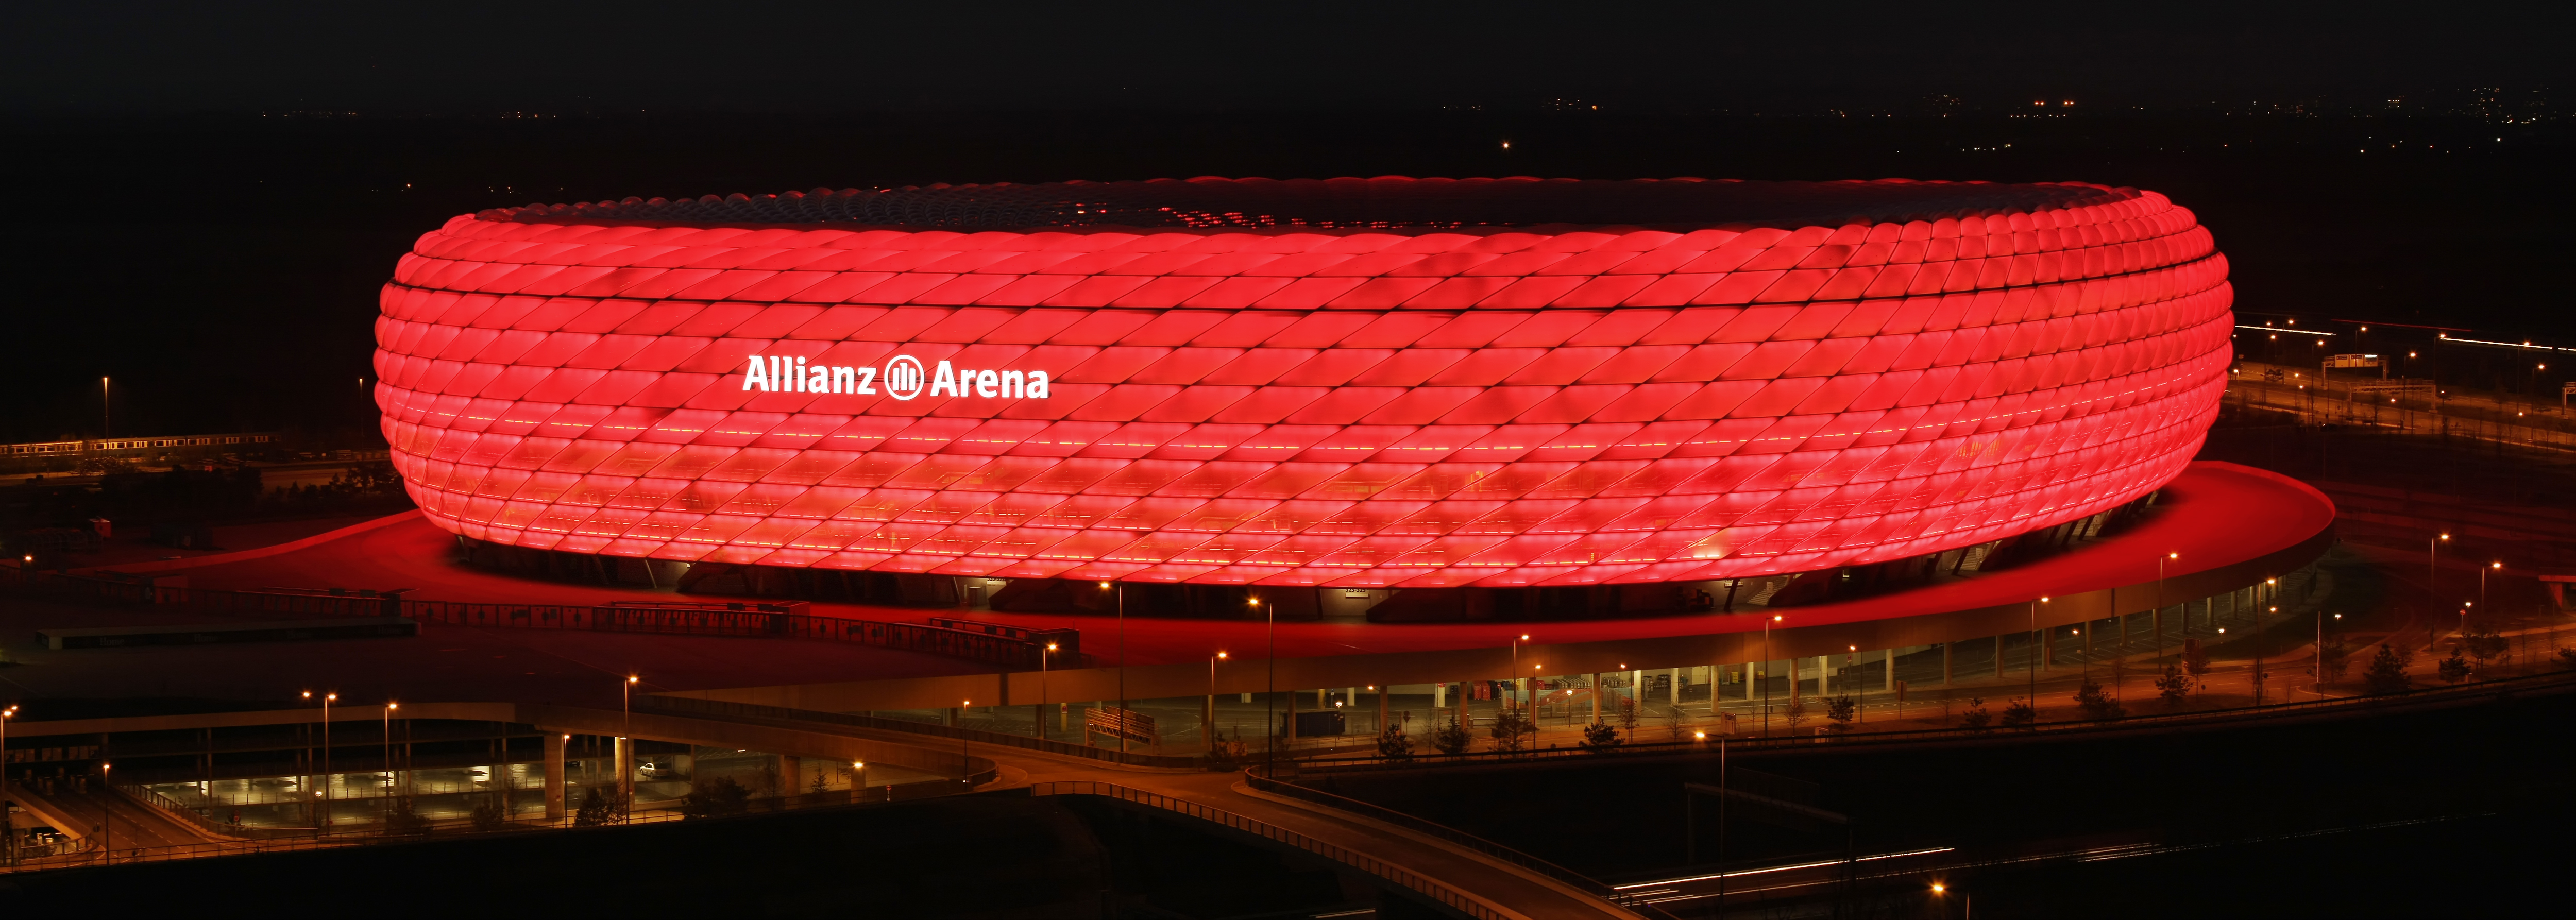 见证辉煌,安联球场竣工十周年 — 拜仁慕尼黑|懂球帝